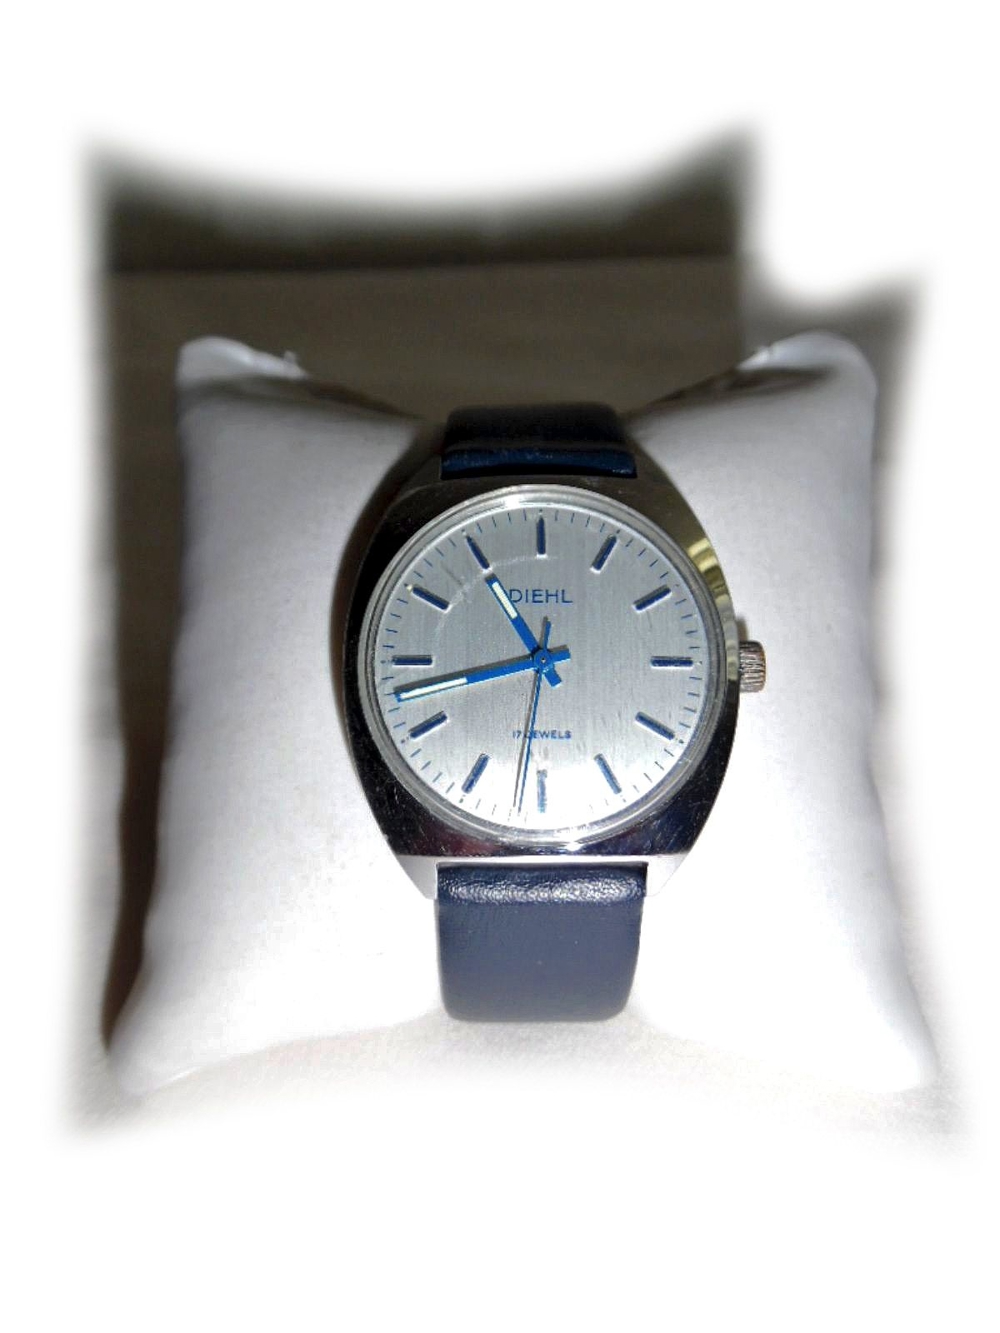 Armbanduhr von Diehl